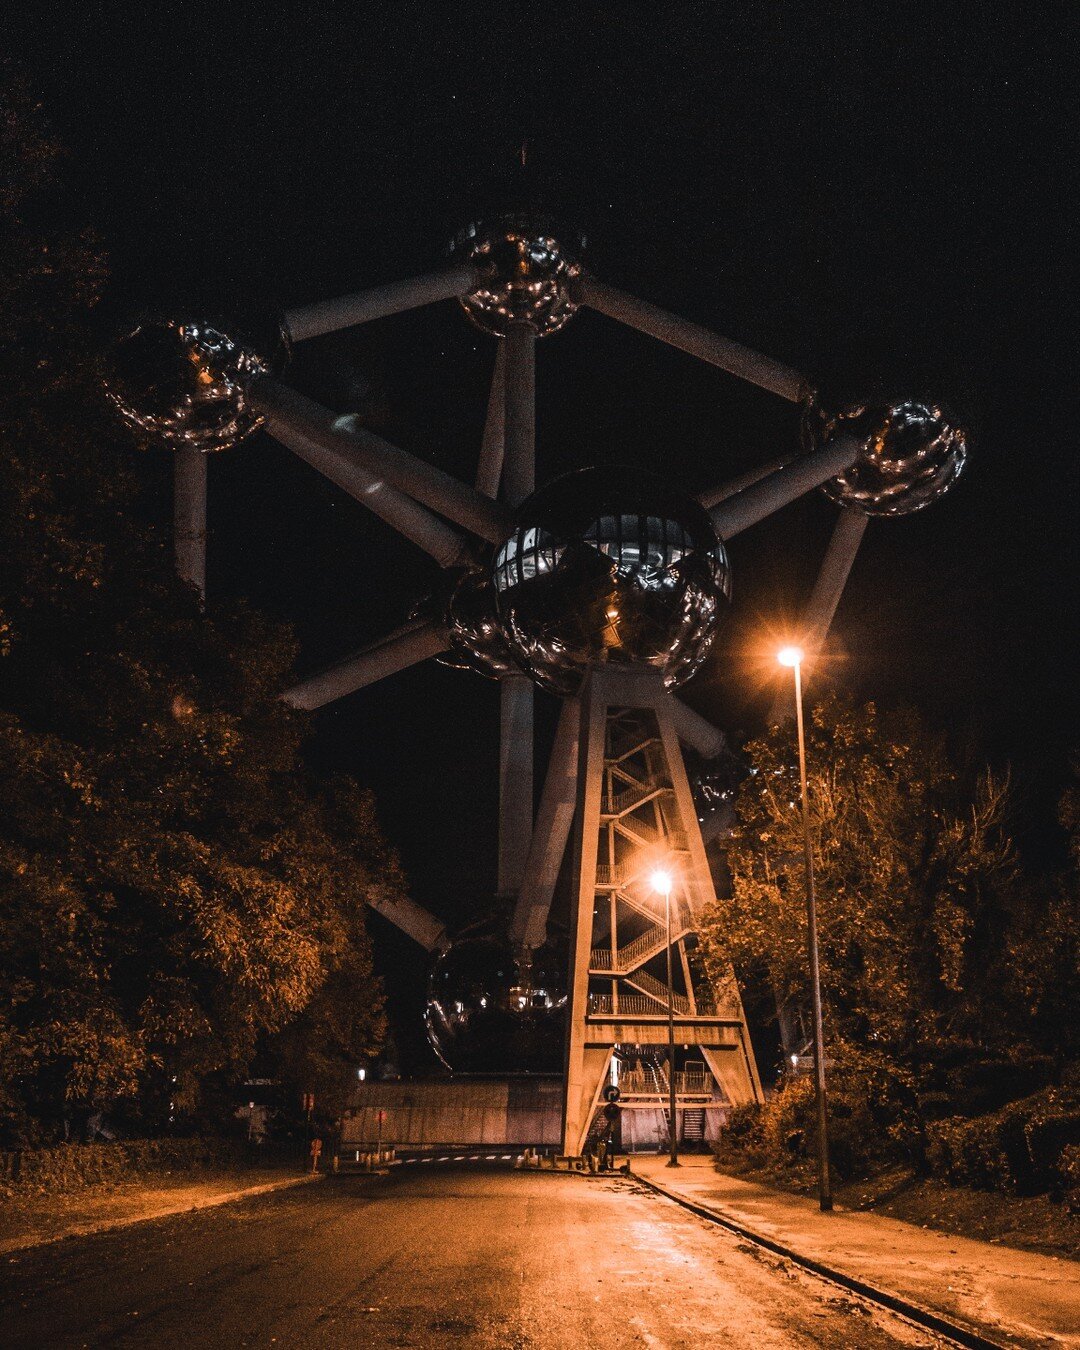 🌌 Explorez avec nous la magie nocturne de l'Atomium de Bruxelles !
Cette photographie prise dans une ruelle avoisinante, offre un avant-go&ucirc;t de l'exp&eacute;rience visuelle et l'ambiance que nous pouvons capturer. Des lieux embl&eacute;matique